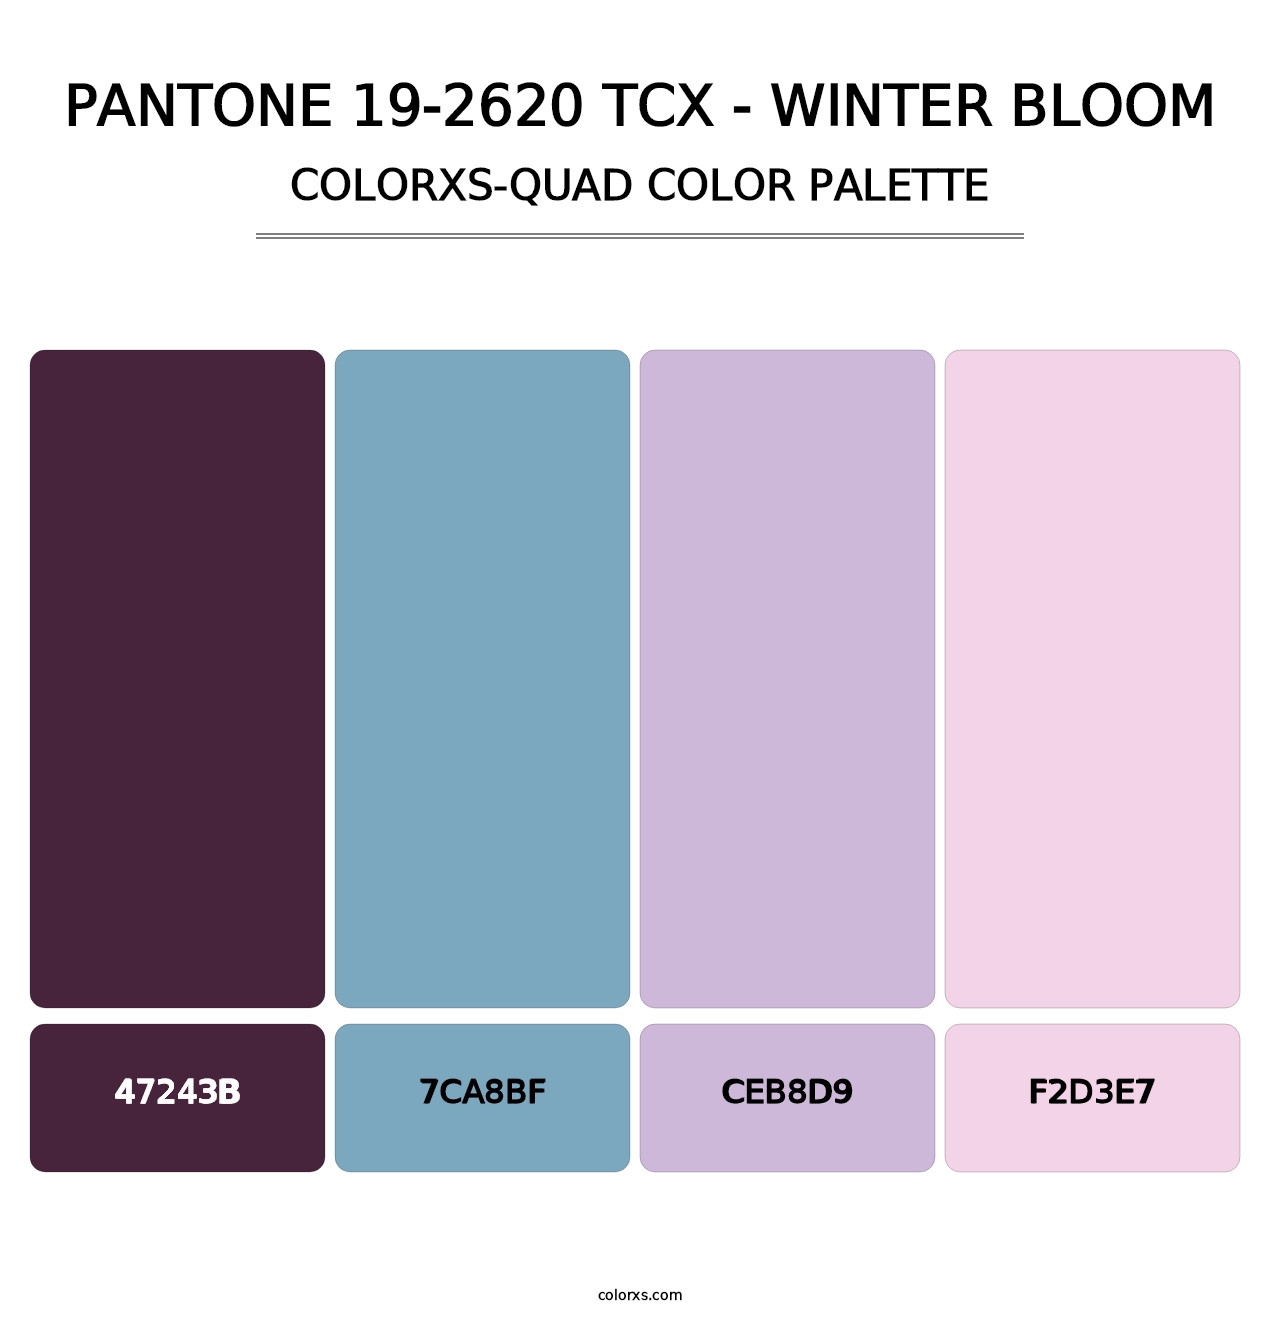 PANTONE 19-2620 TCX - Winter Bloom - Colorxs Quad Palette